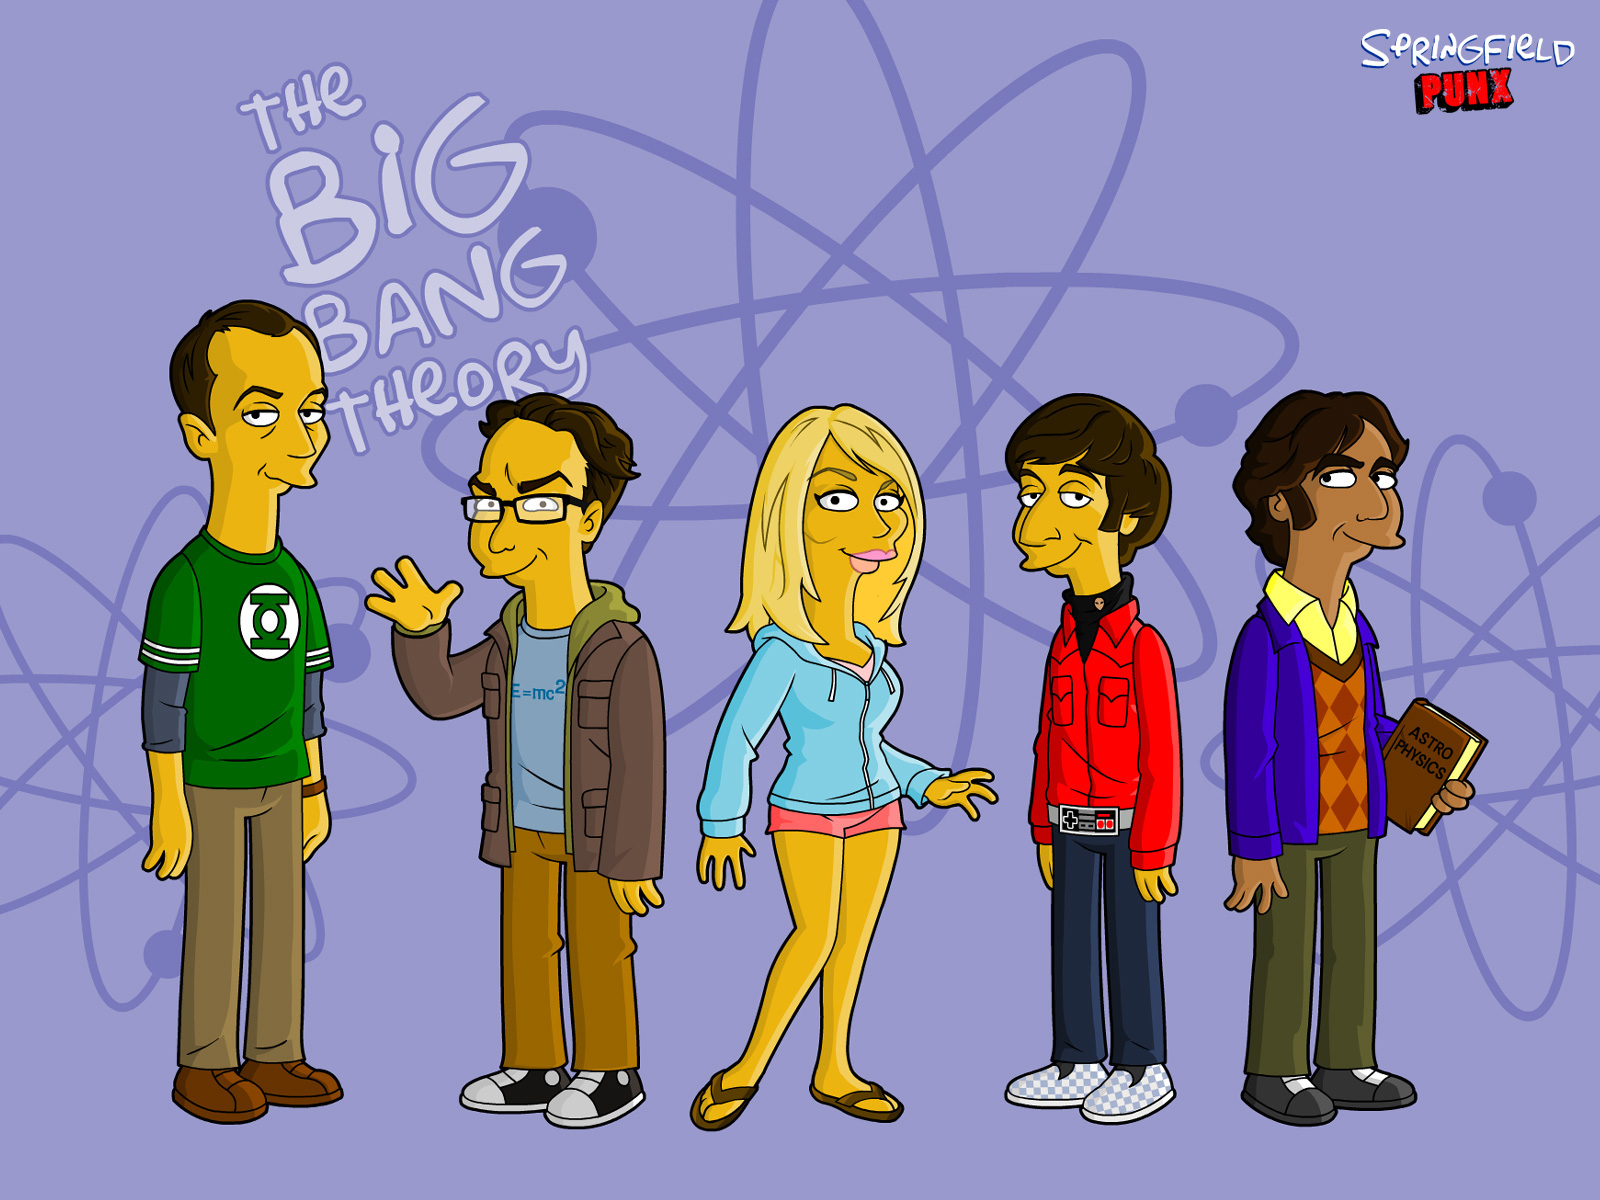 la théorie du big bang fond d'écran,dessin animé,dessin animé,groupe social,animation,illustration